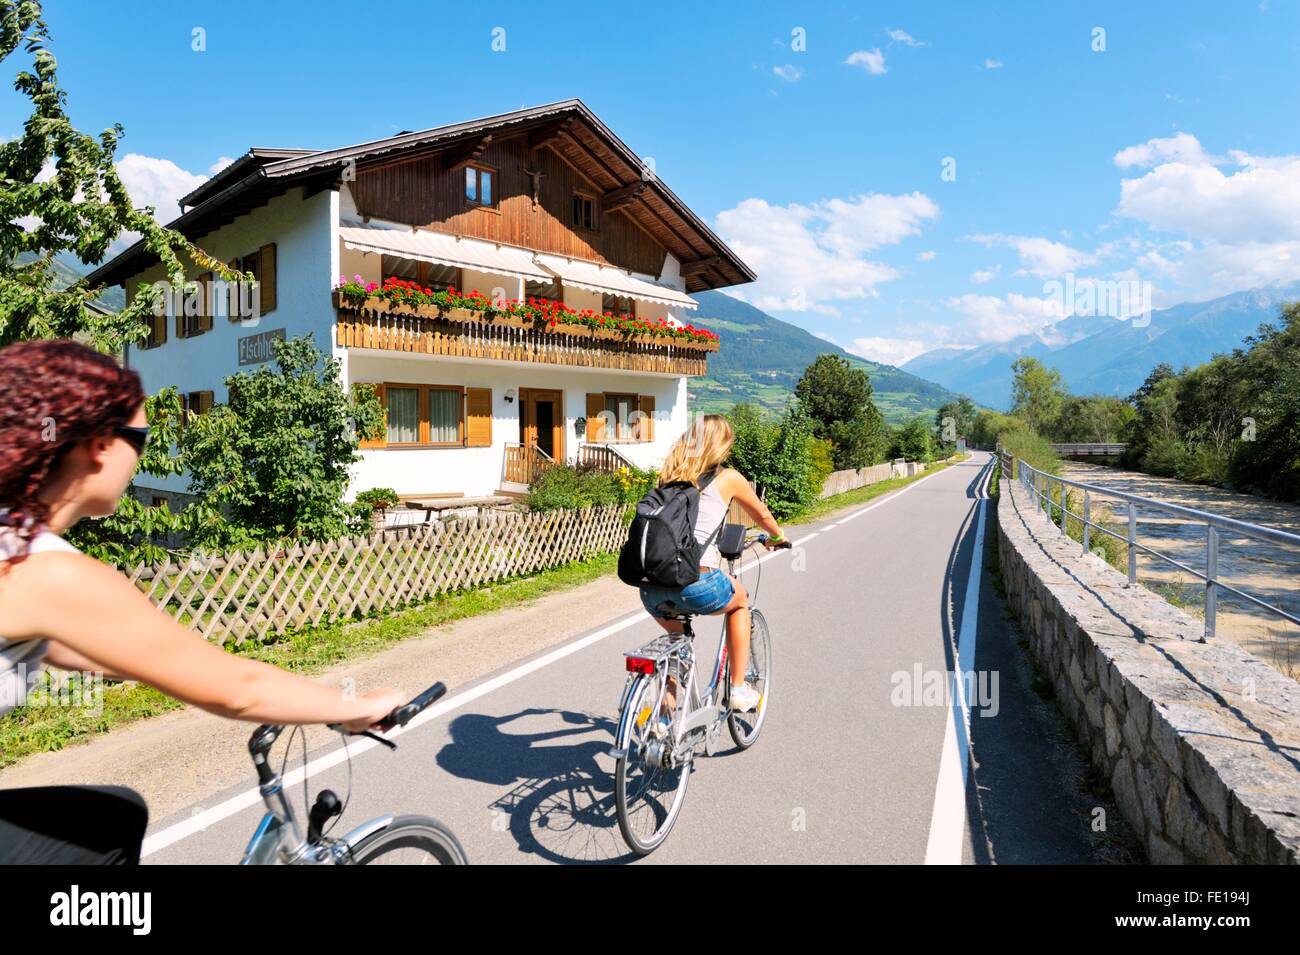 Radfahrer lassen die mittelalterlichen Mauern umgebene Stadt Glurns in der Region Südtirol in Italien. Riverside Chalet auf der Via Lungo Adige Stockfoto